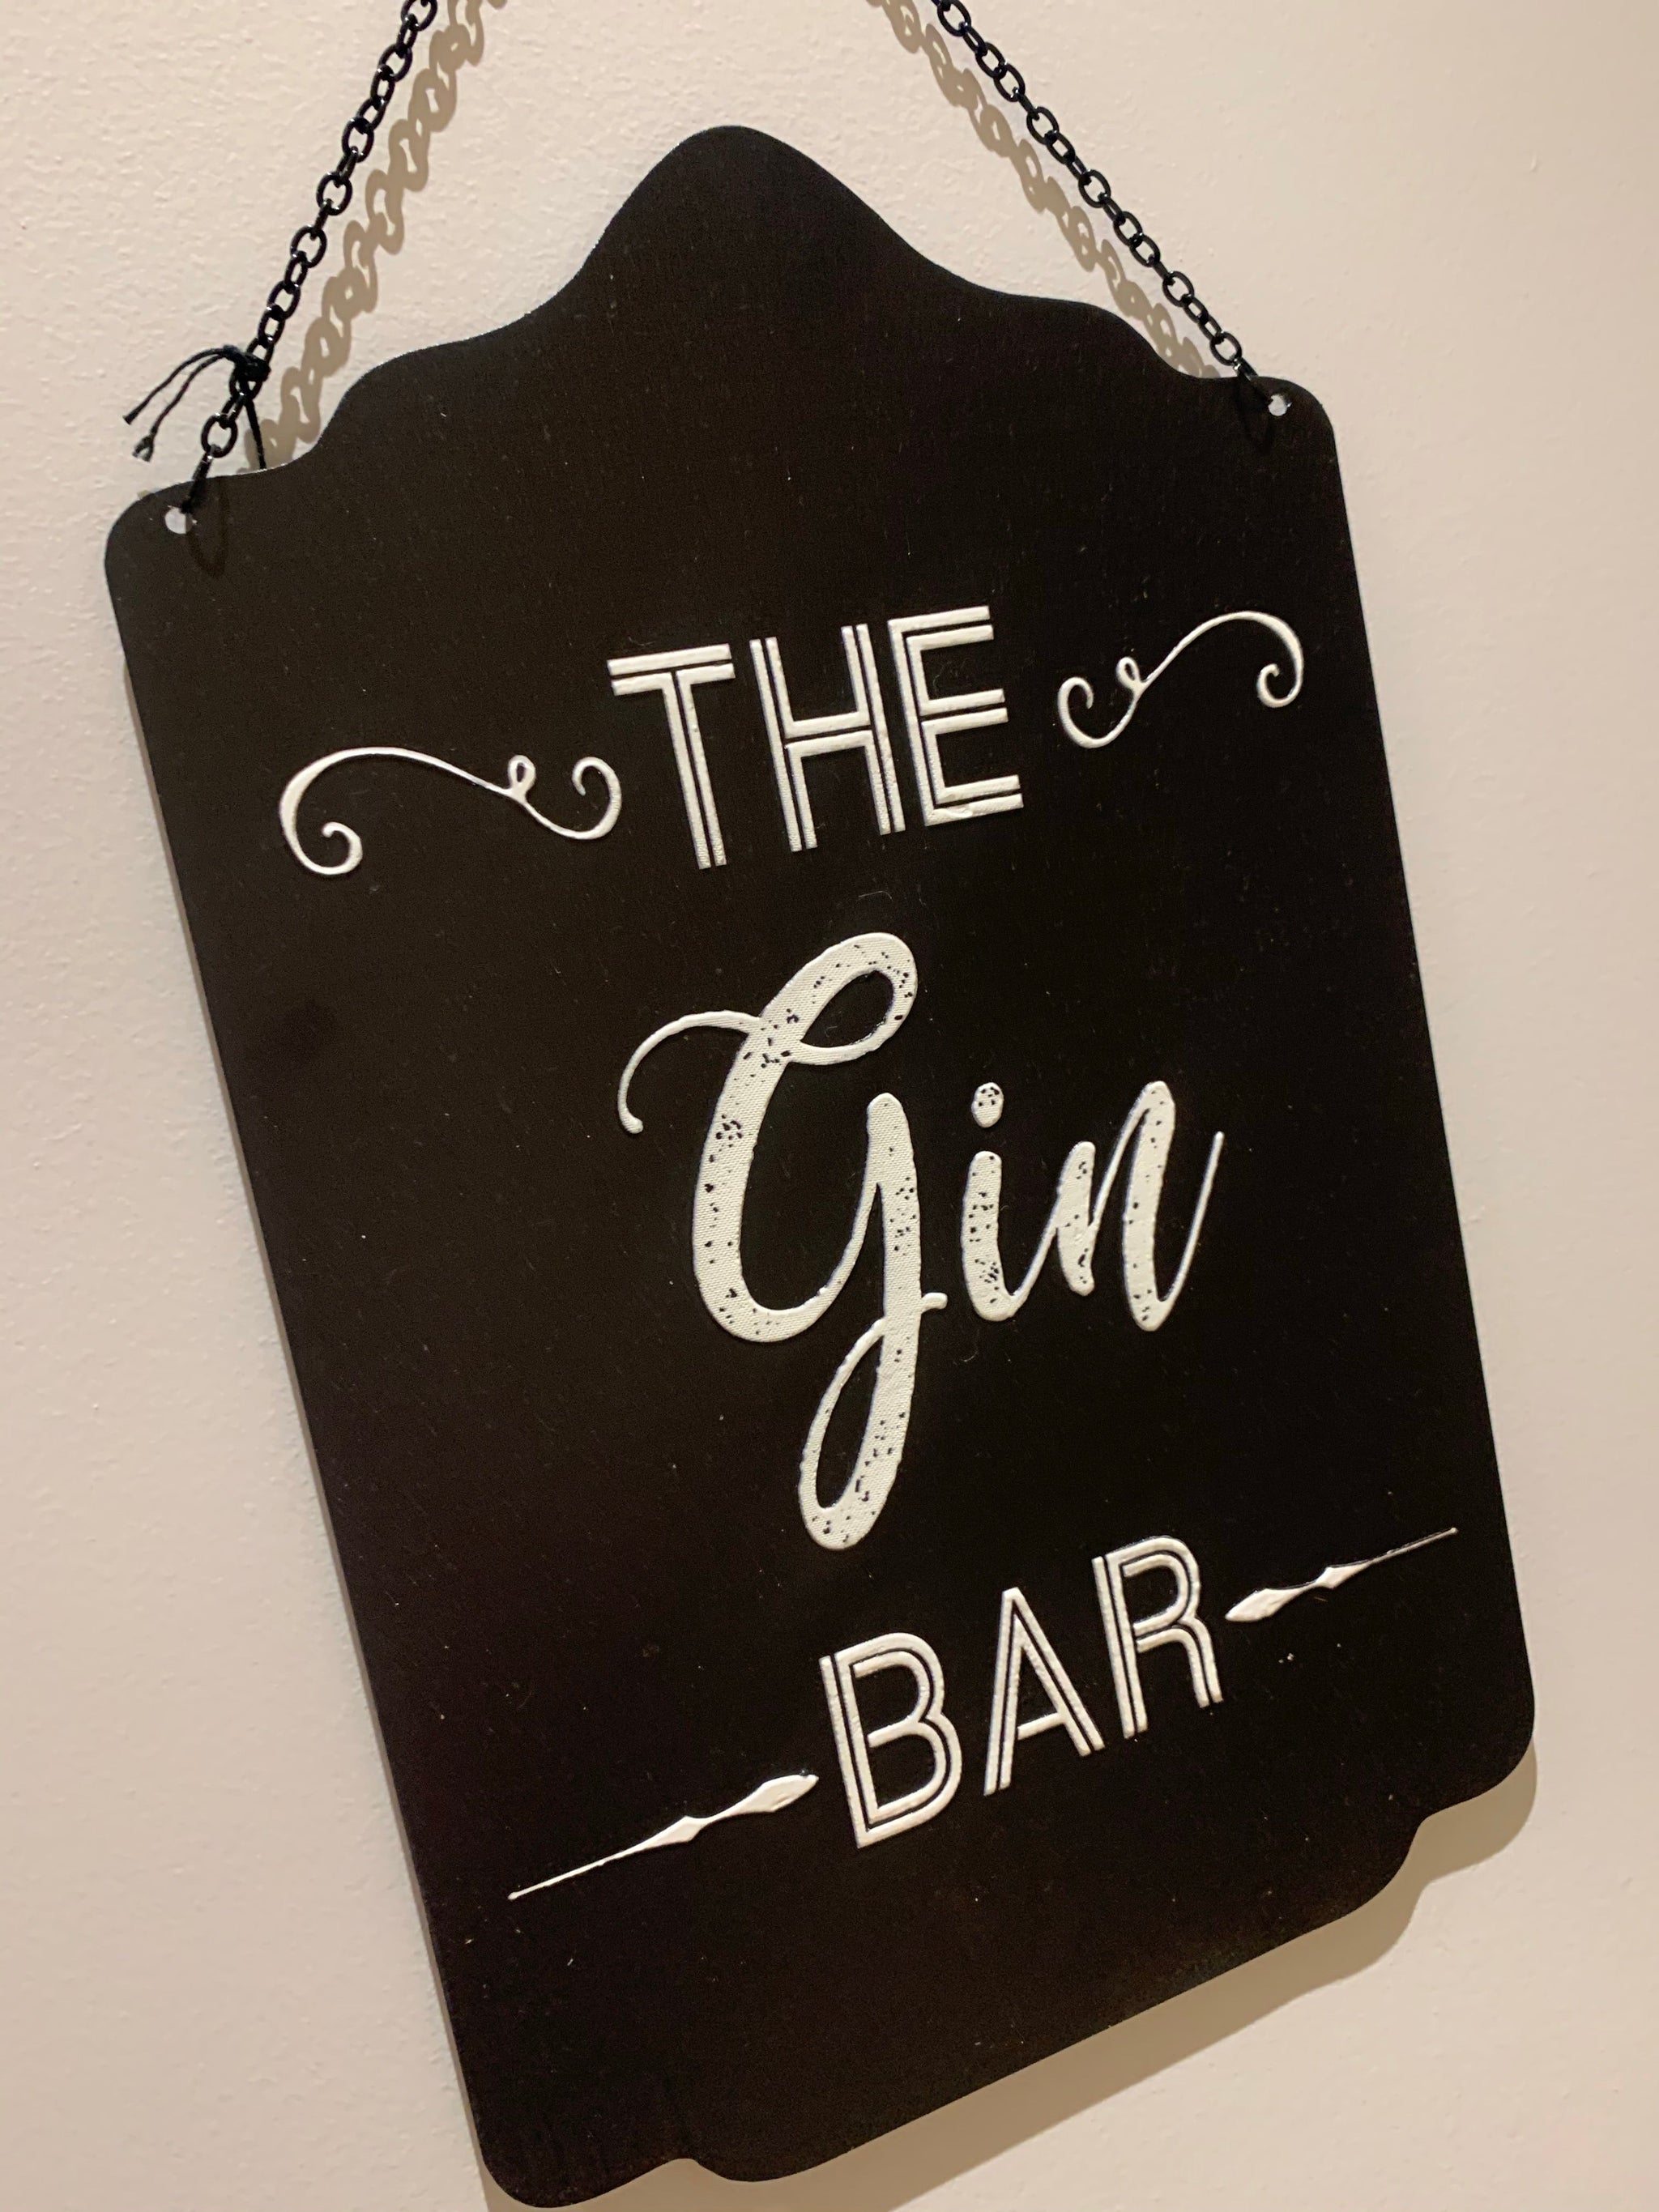 Gin bar sign